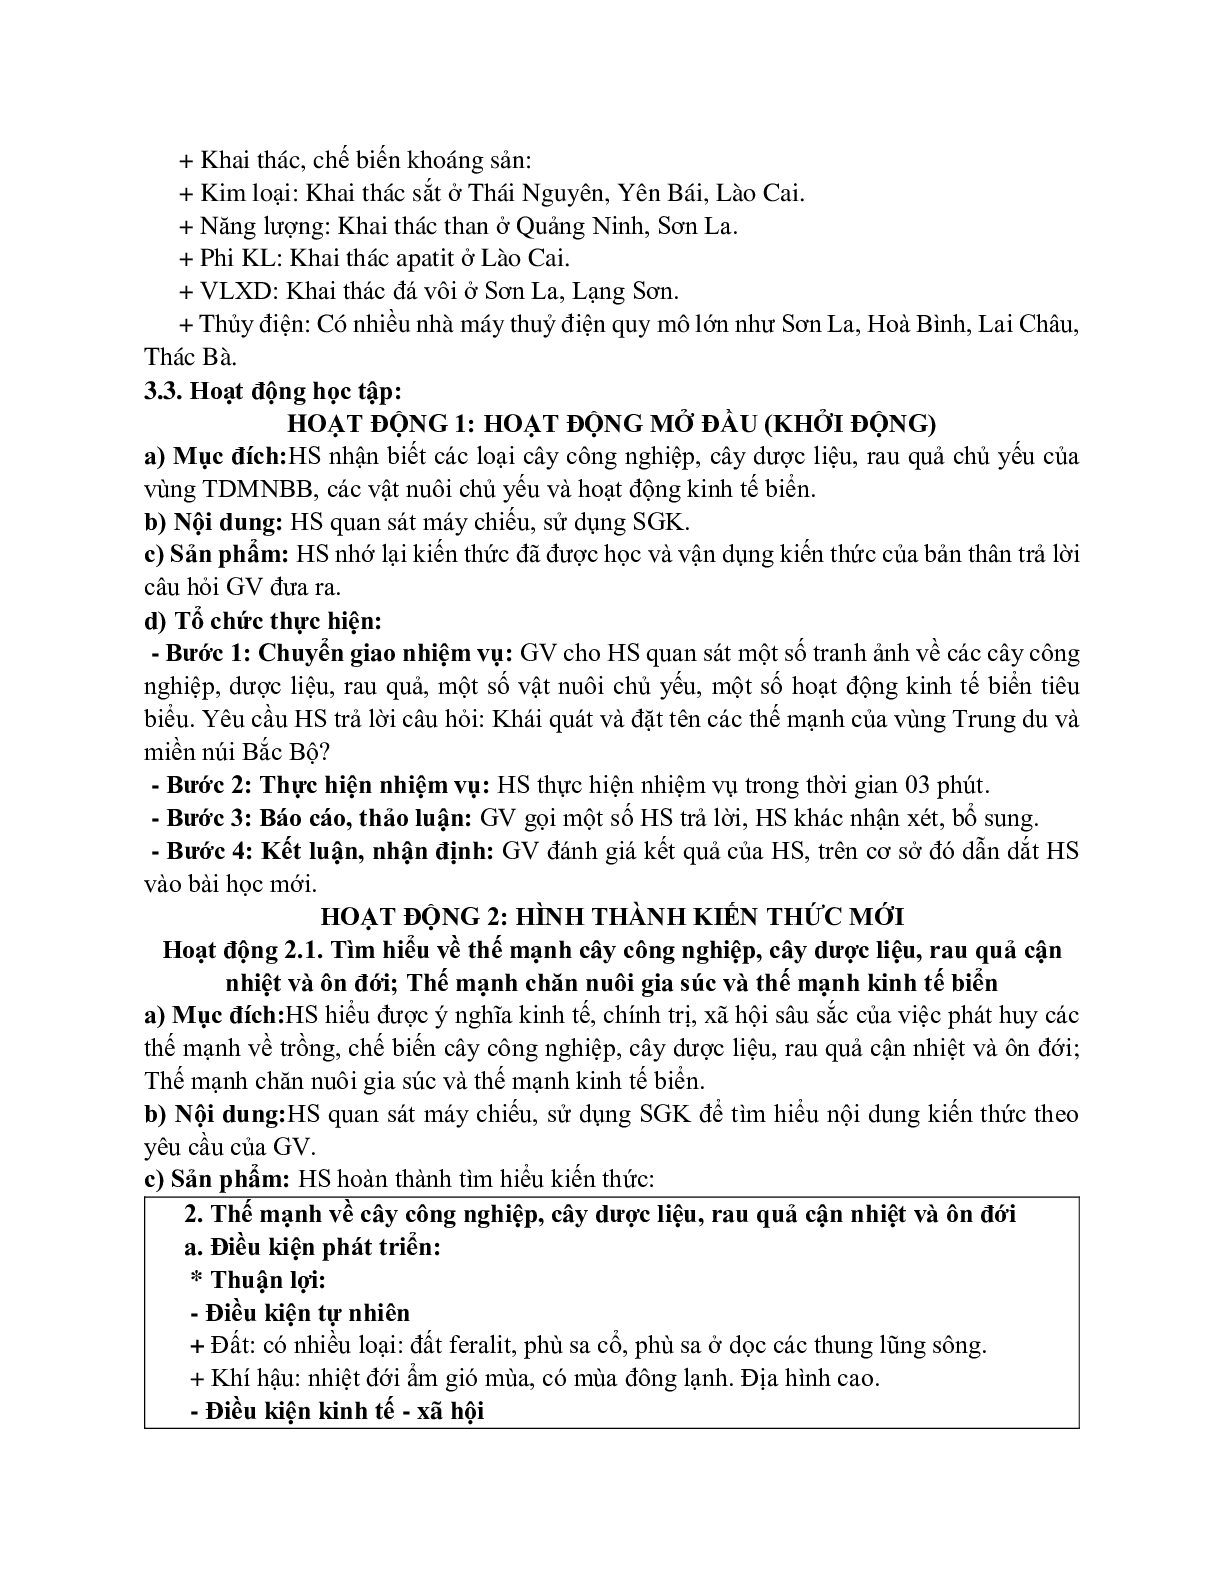 Giáo án Địa lí 12 Bài 32 Vấn đề khai thác thế mạnh ở trung du và miền núi Bắc Bộ (tiết 2) mới nhất (trang 2)